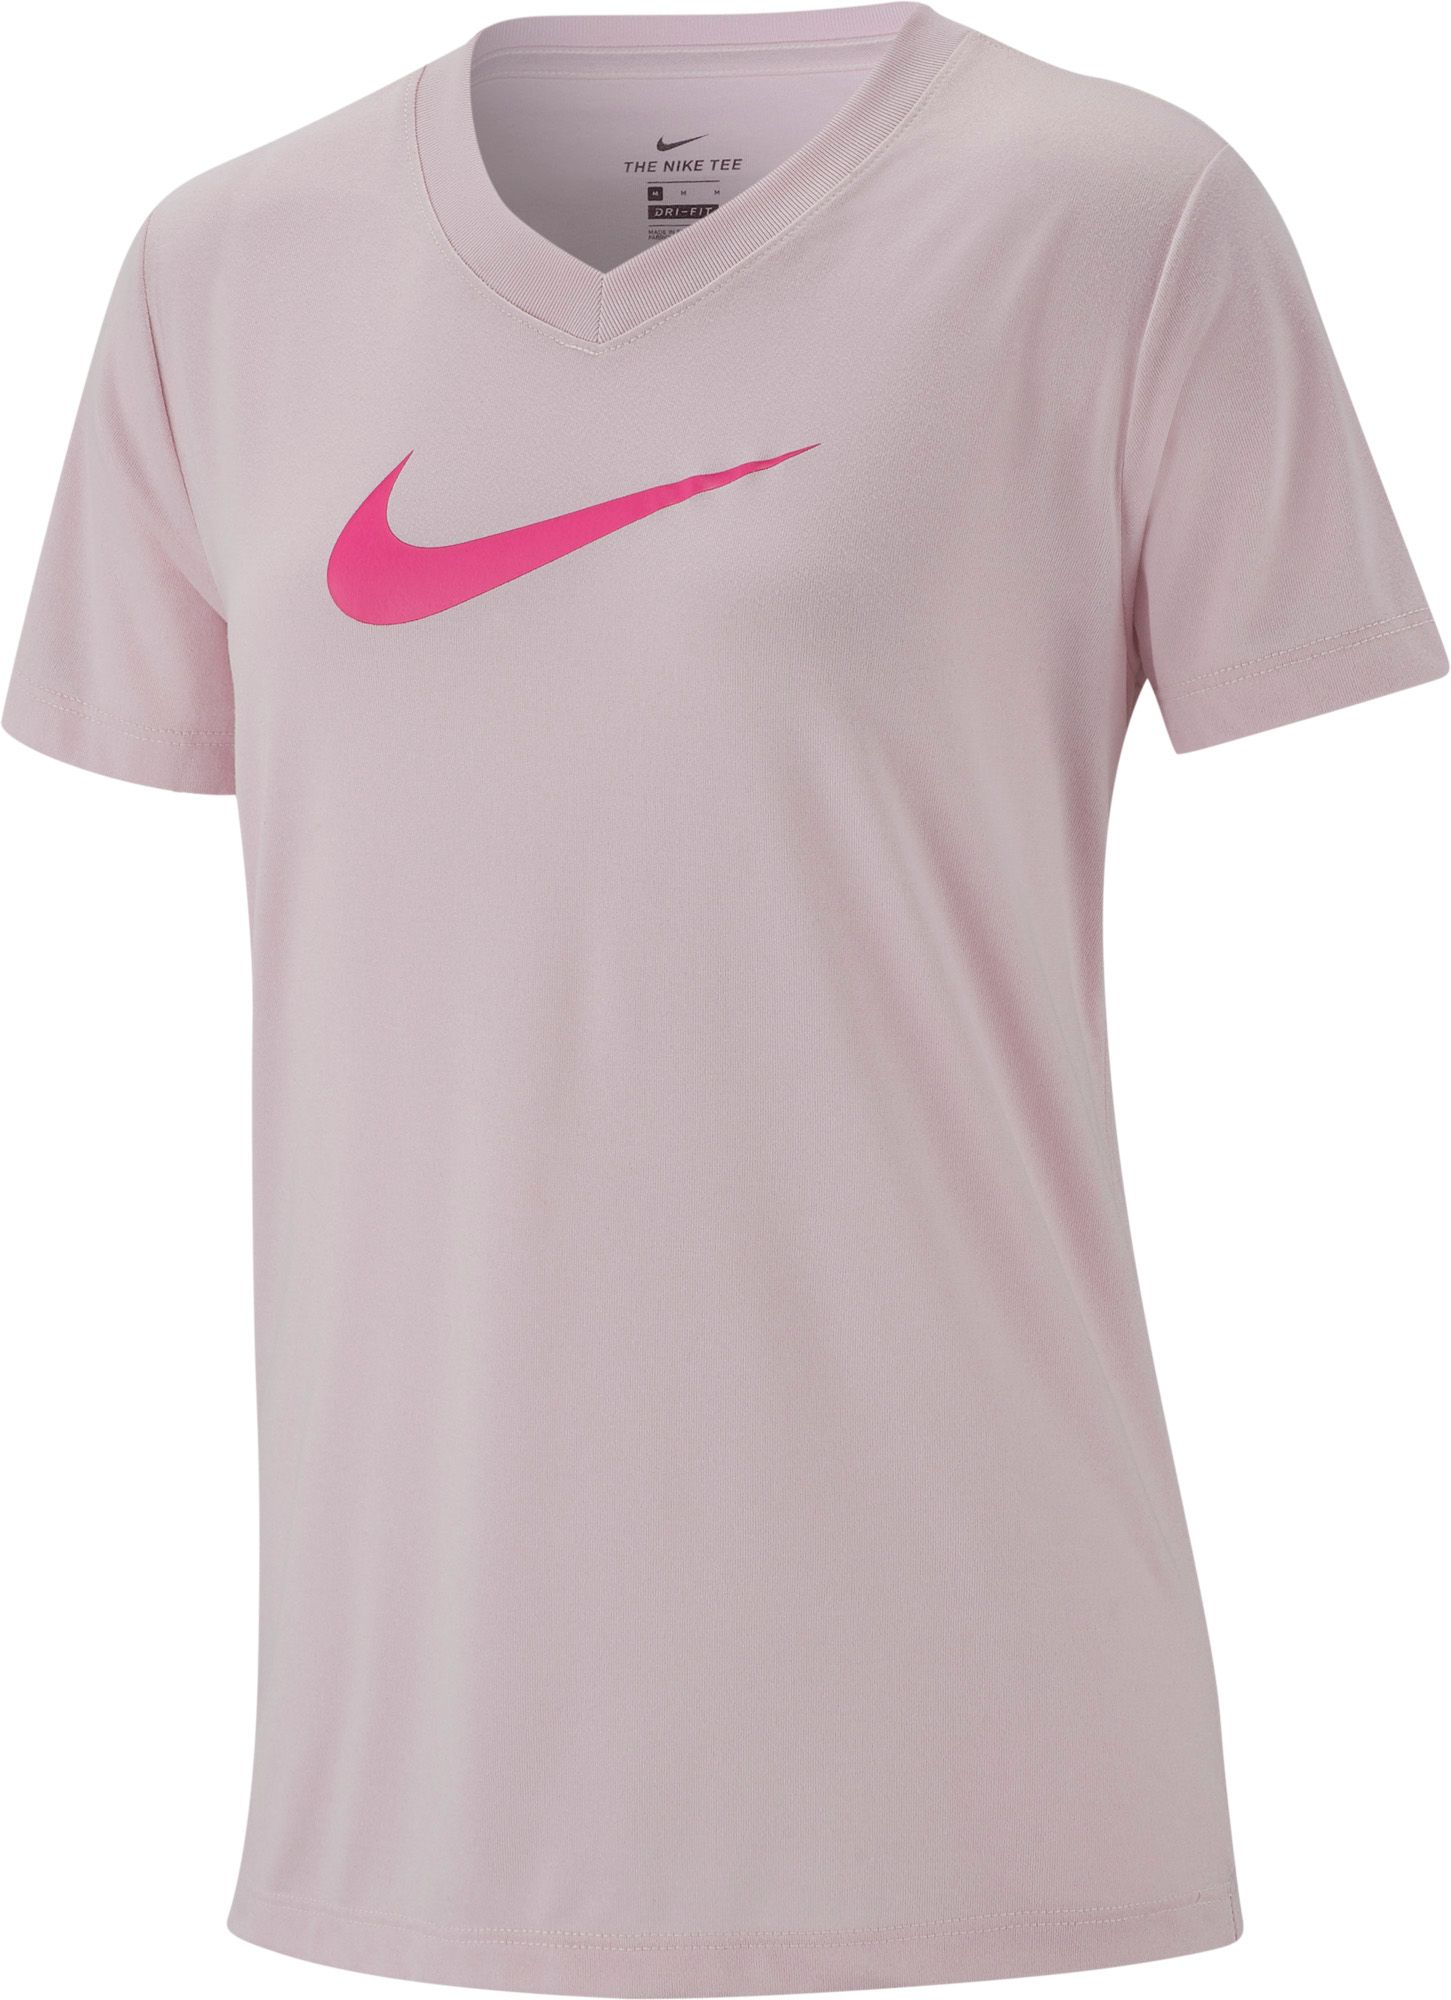 hot pink nike shirt womens